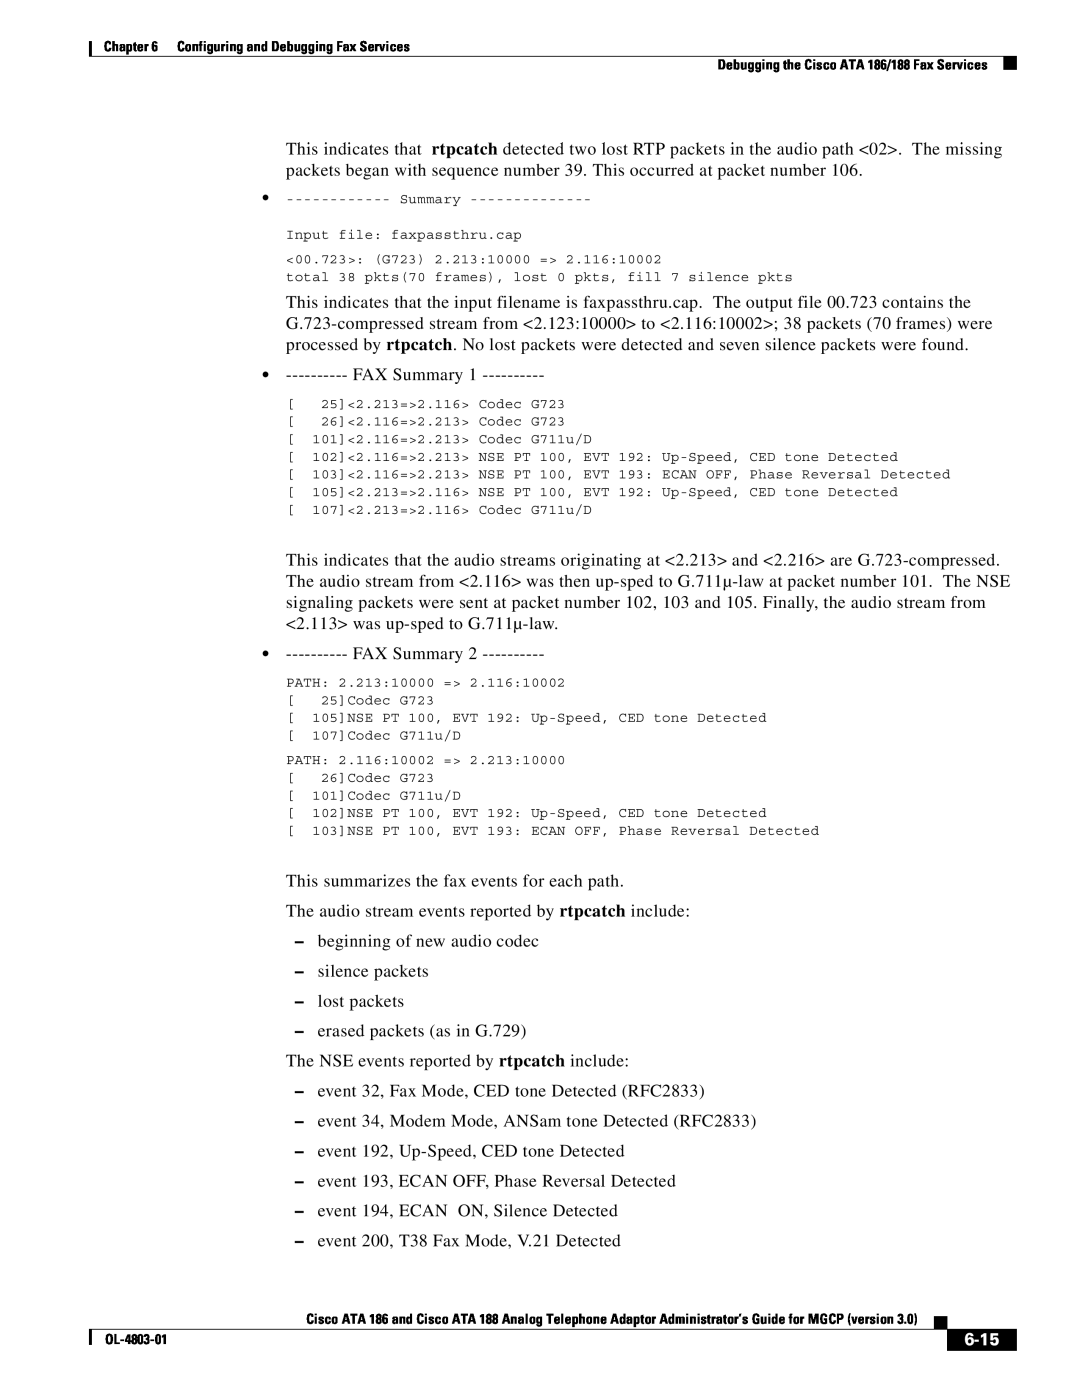 Cisco Systems ATA 186 manual 6-15, FAX Summary 